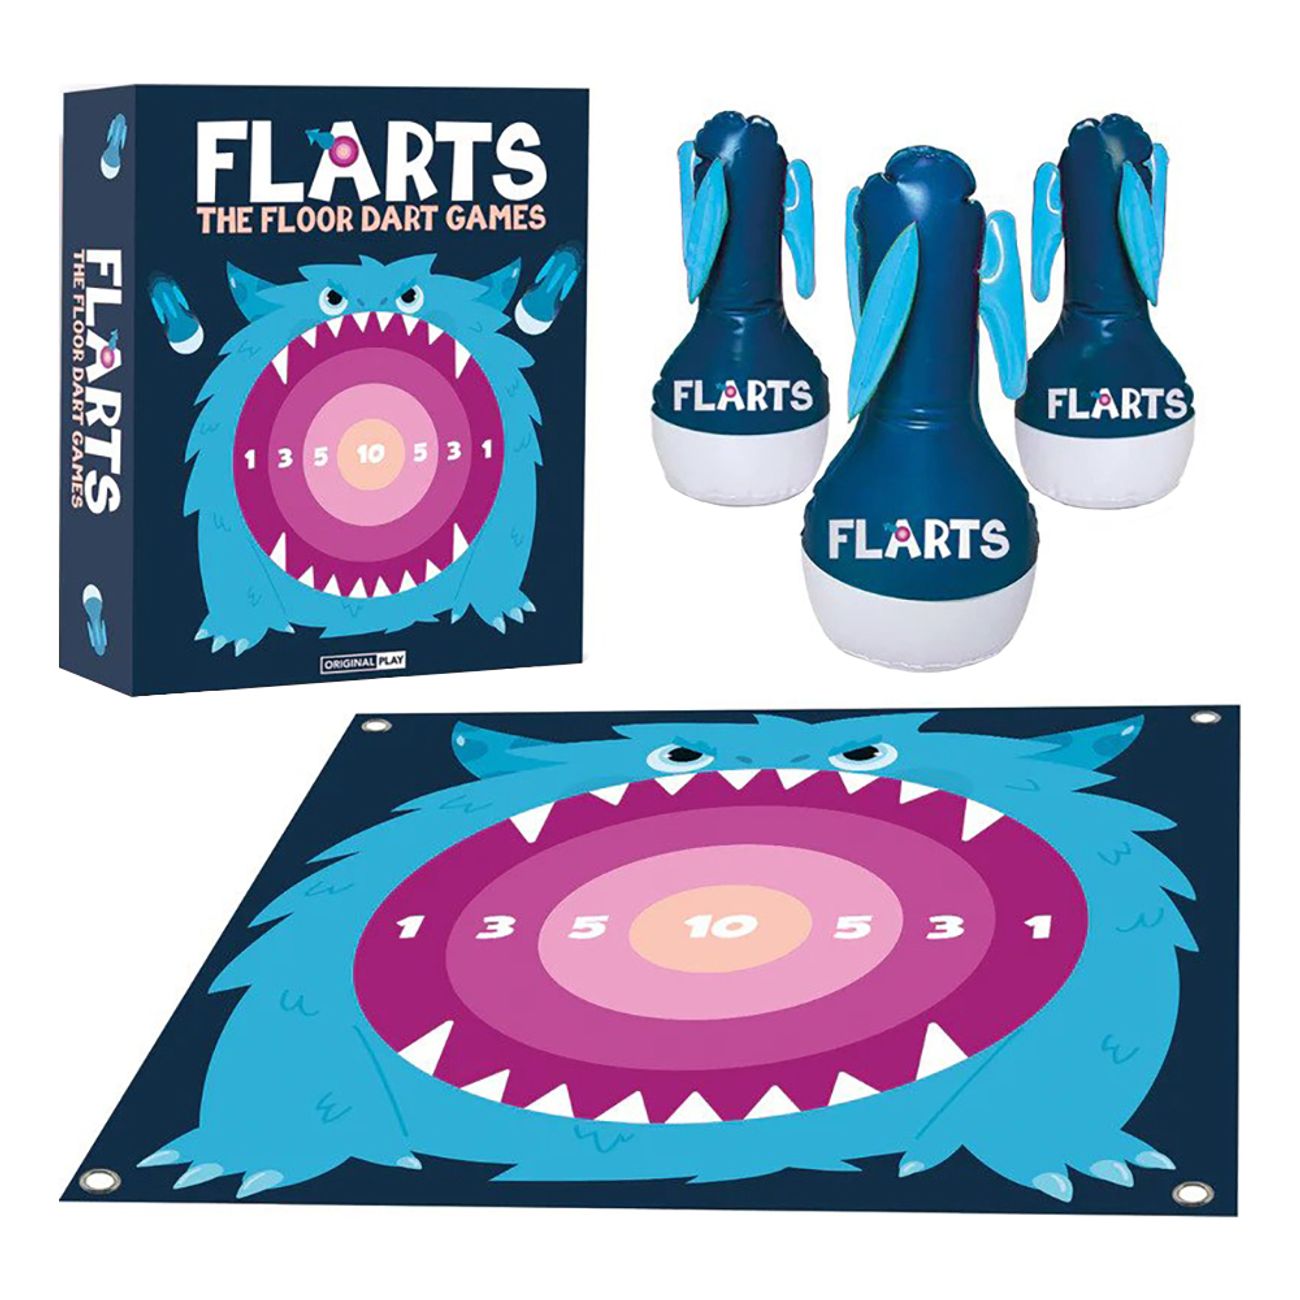 flarts-tradgardsspel-91949-1